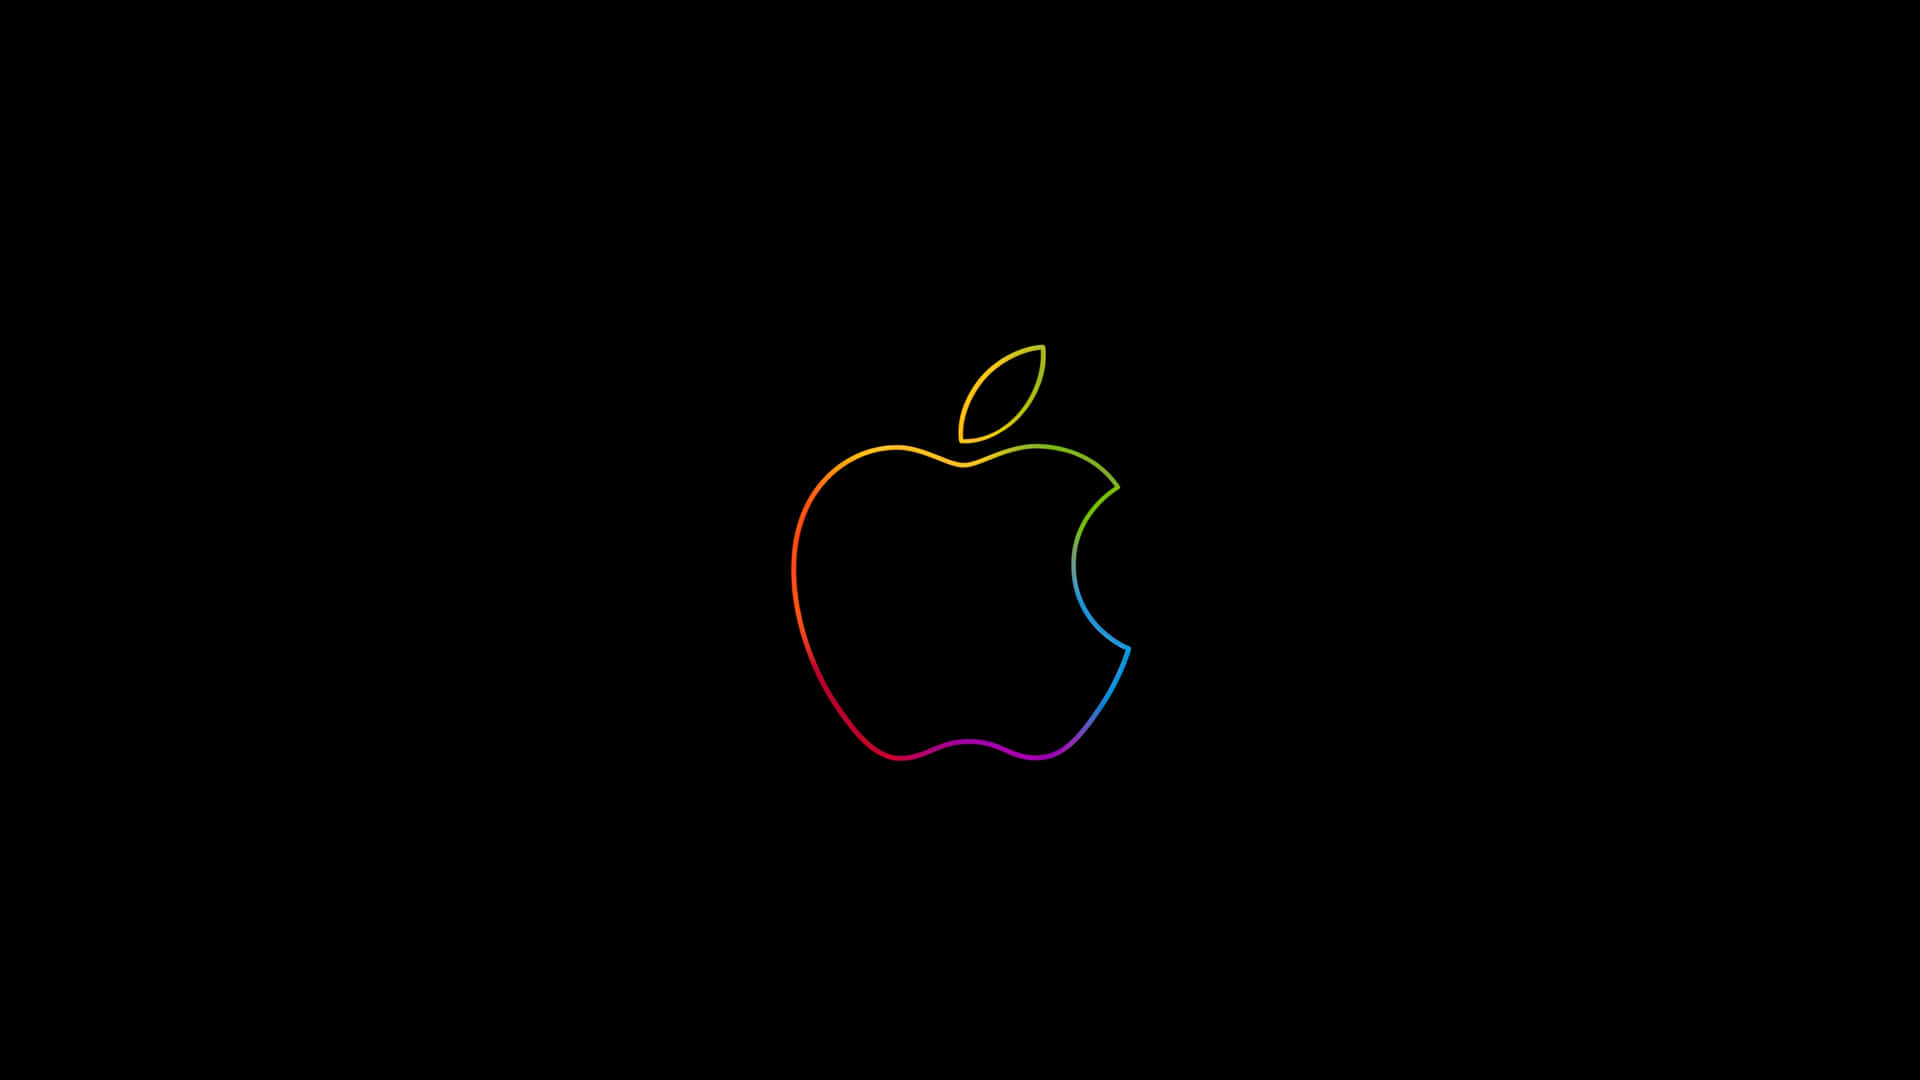 Sfondoelegante Con Il Logo Di Apple.